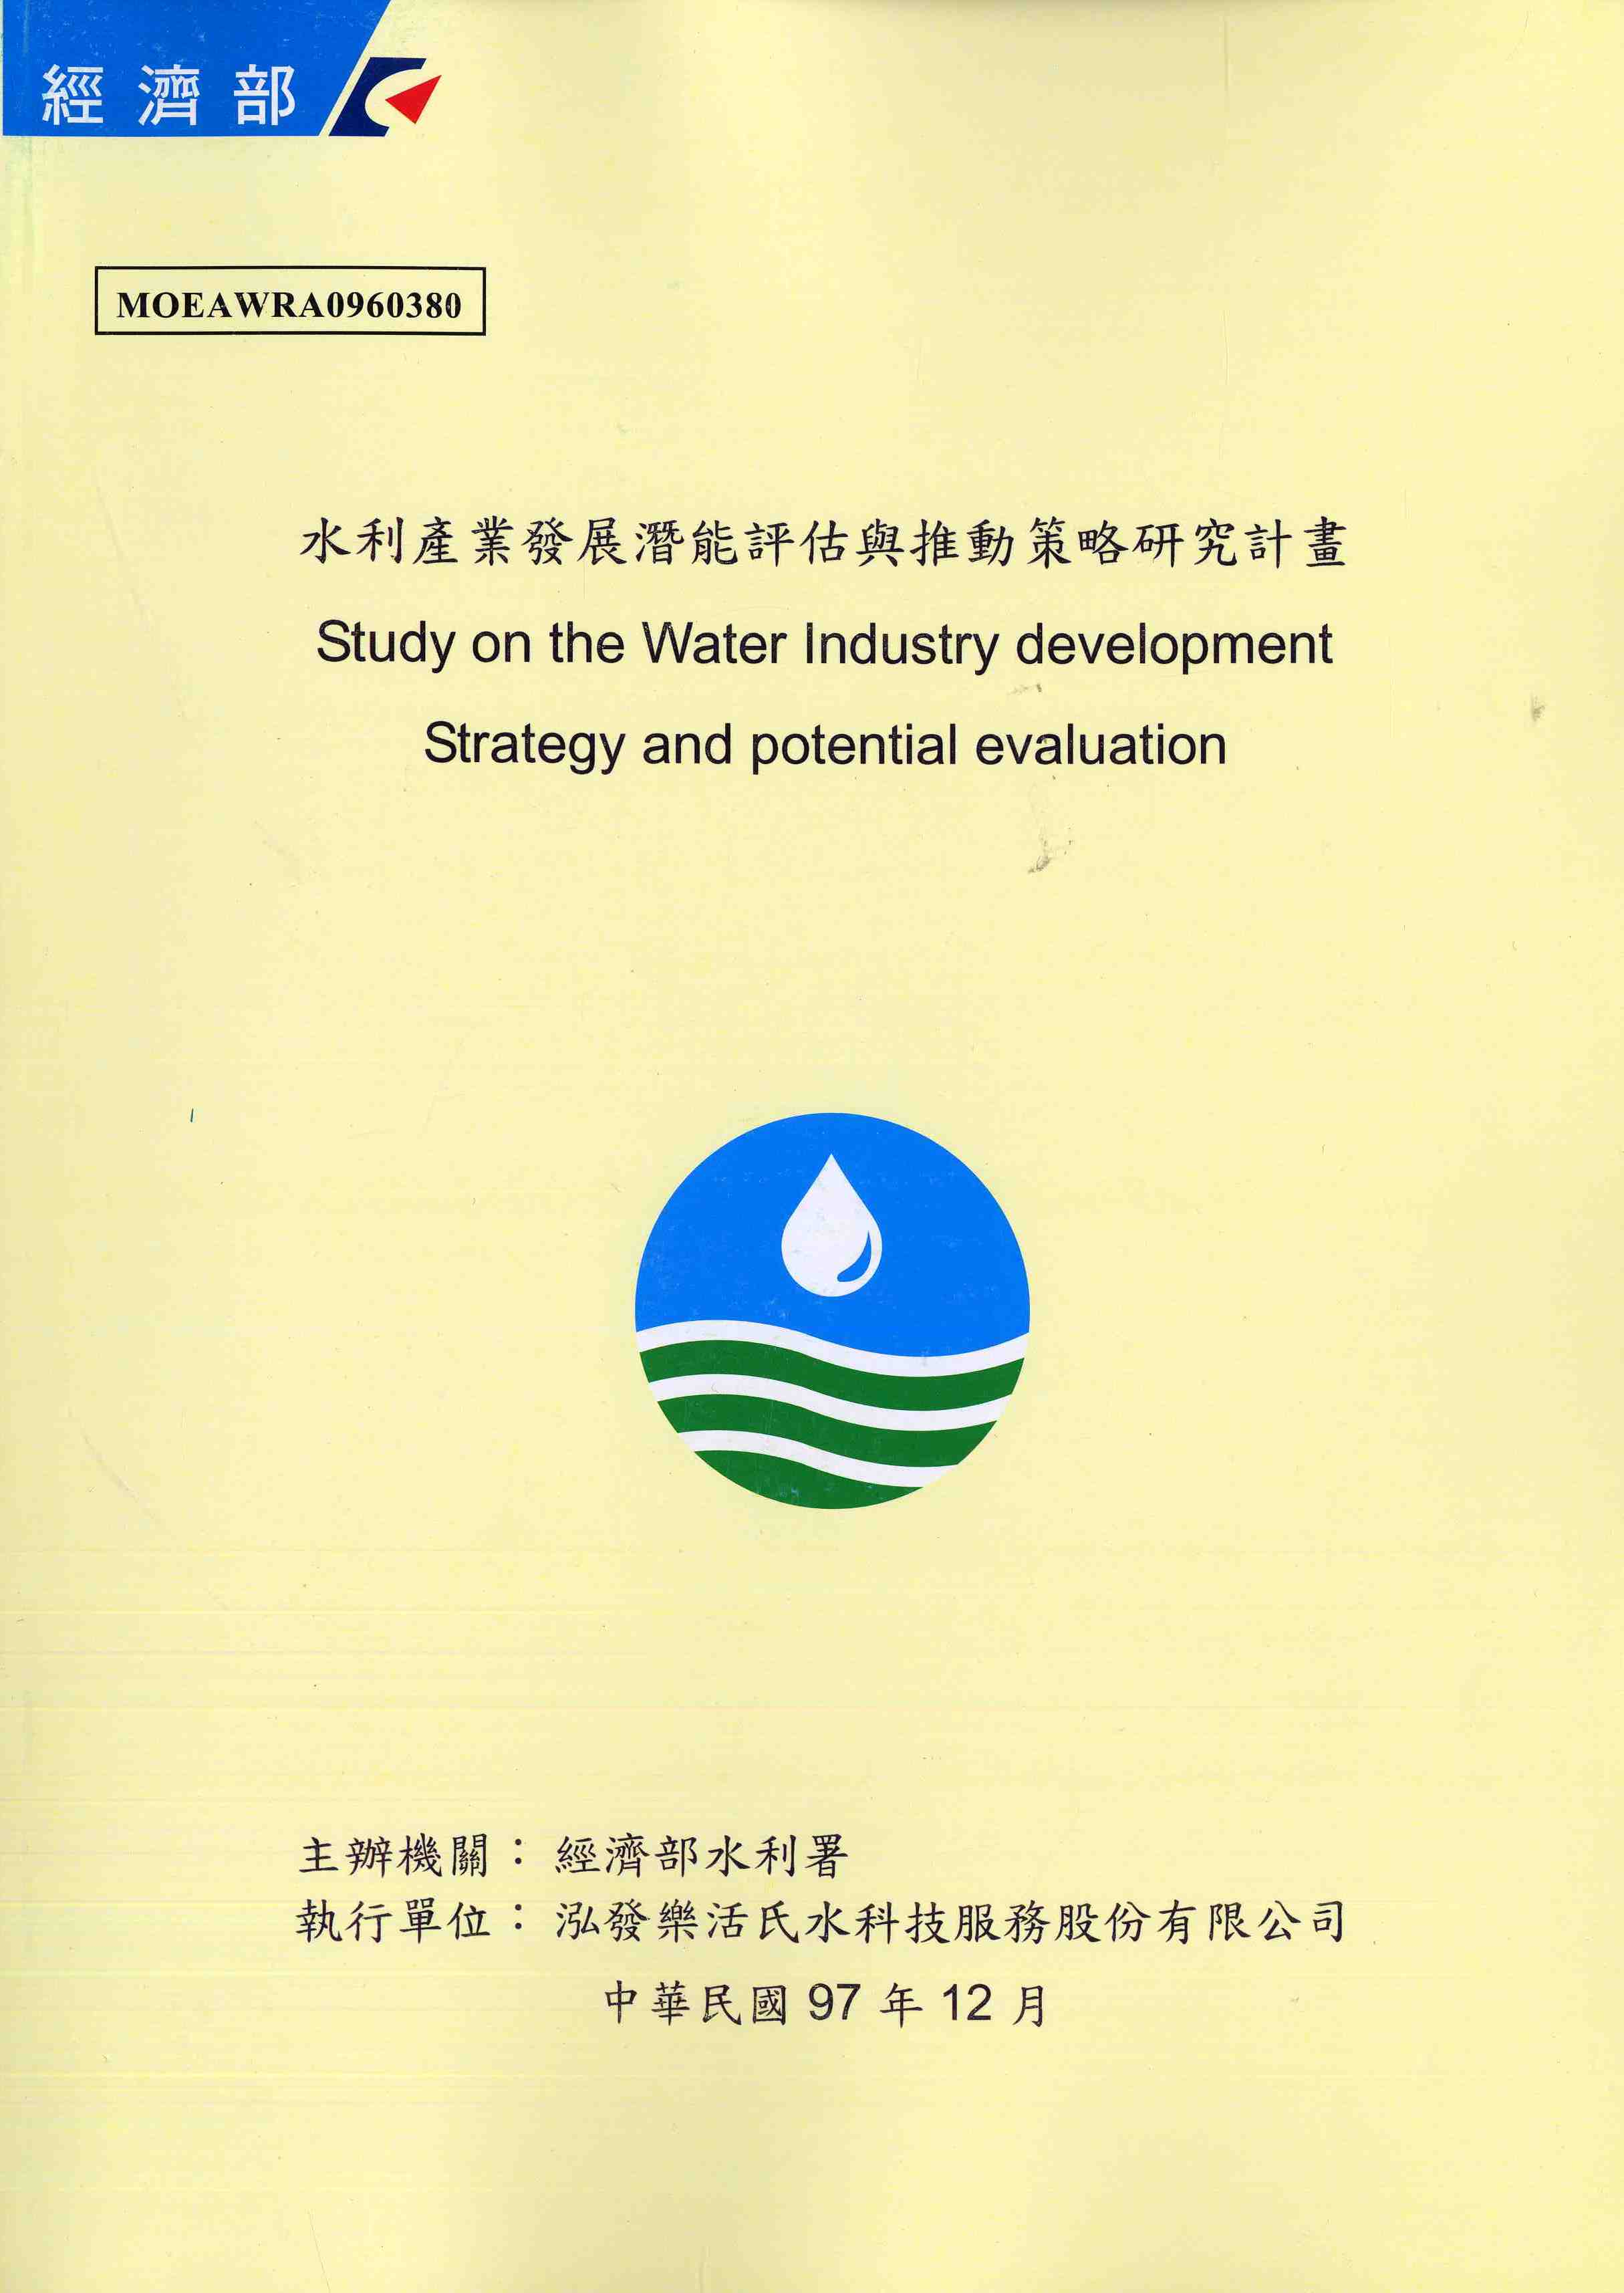 水利產業發展潛能評估與推動策略研究計畫期末報告